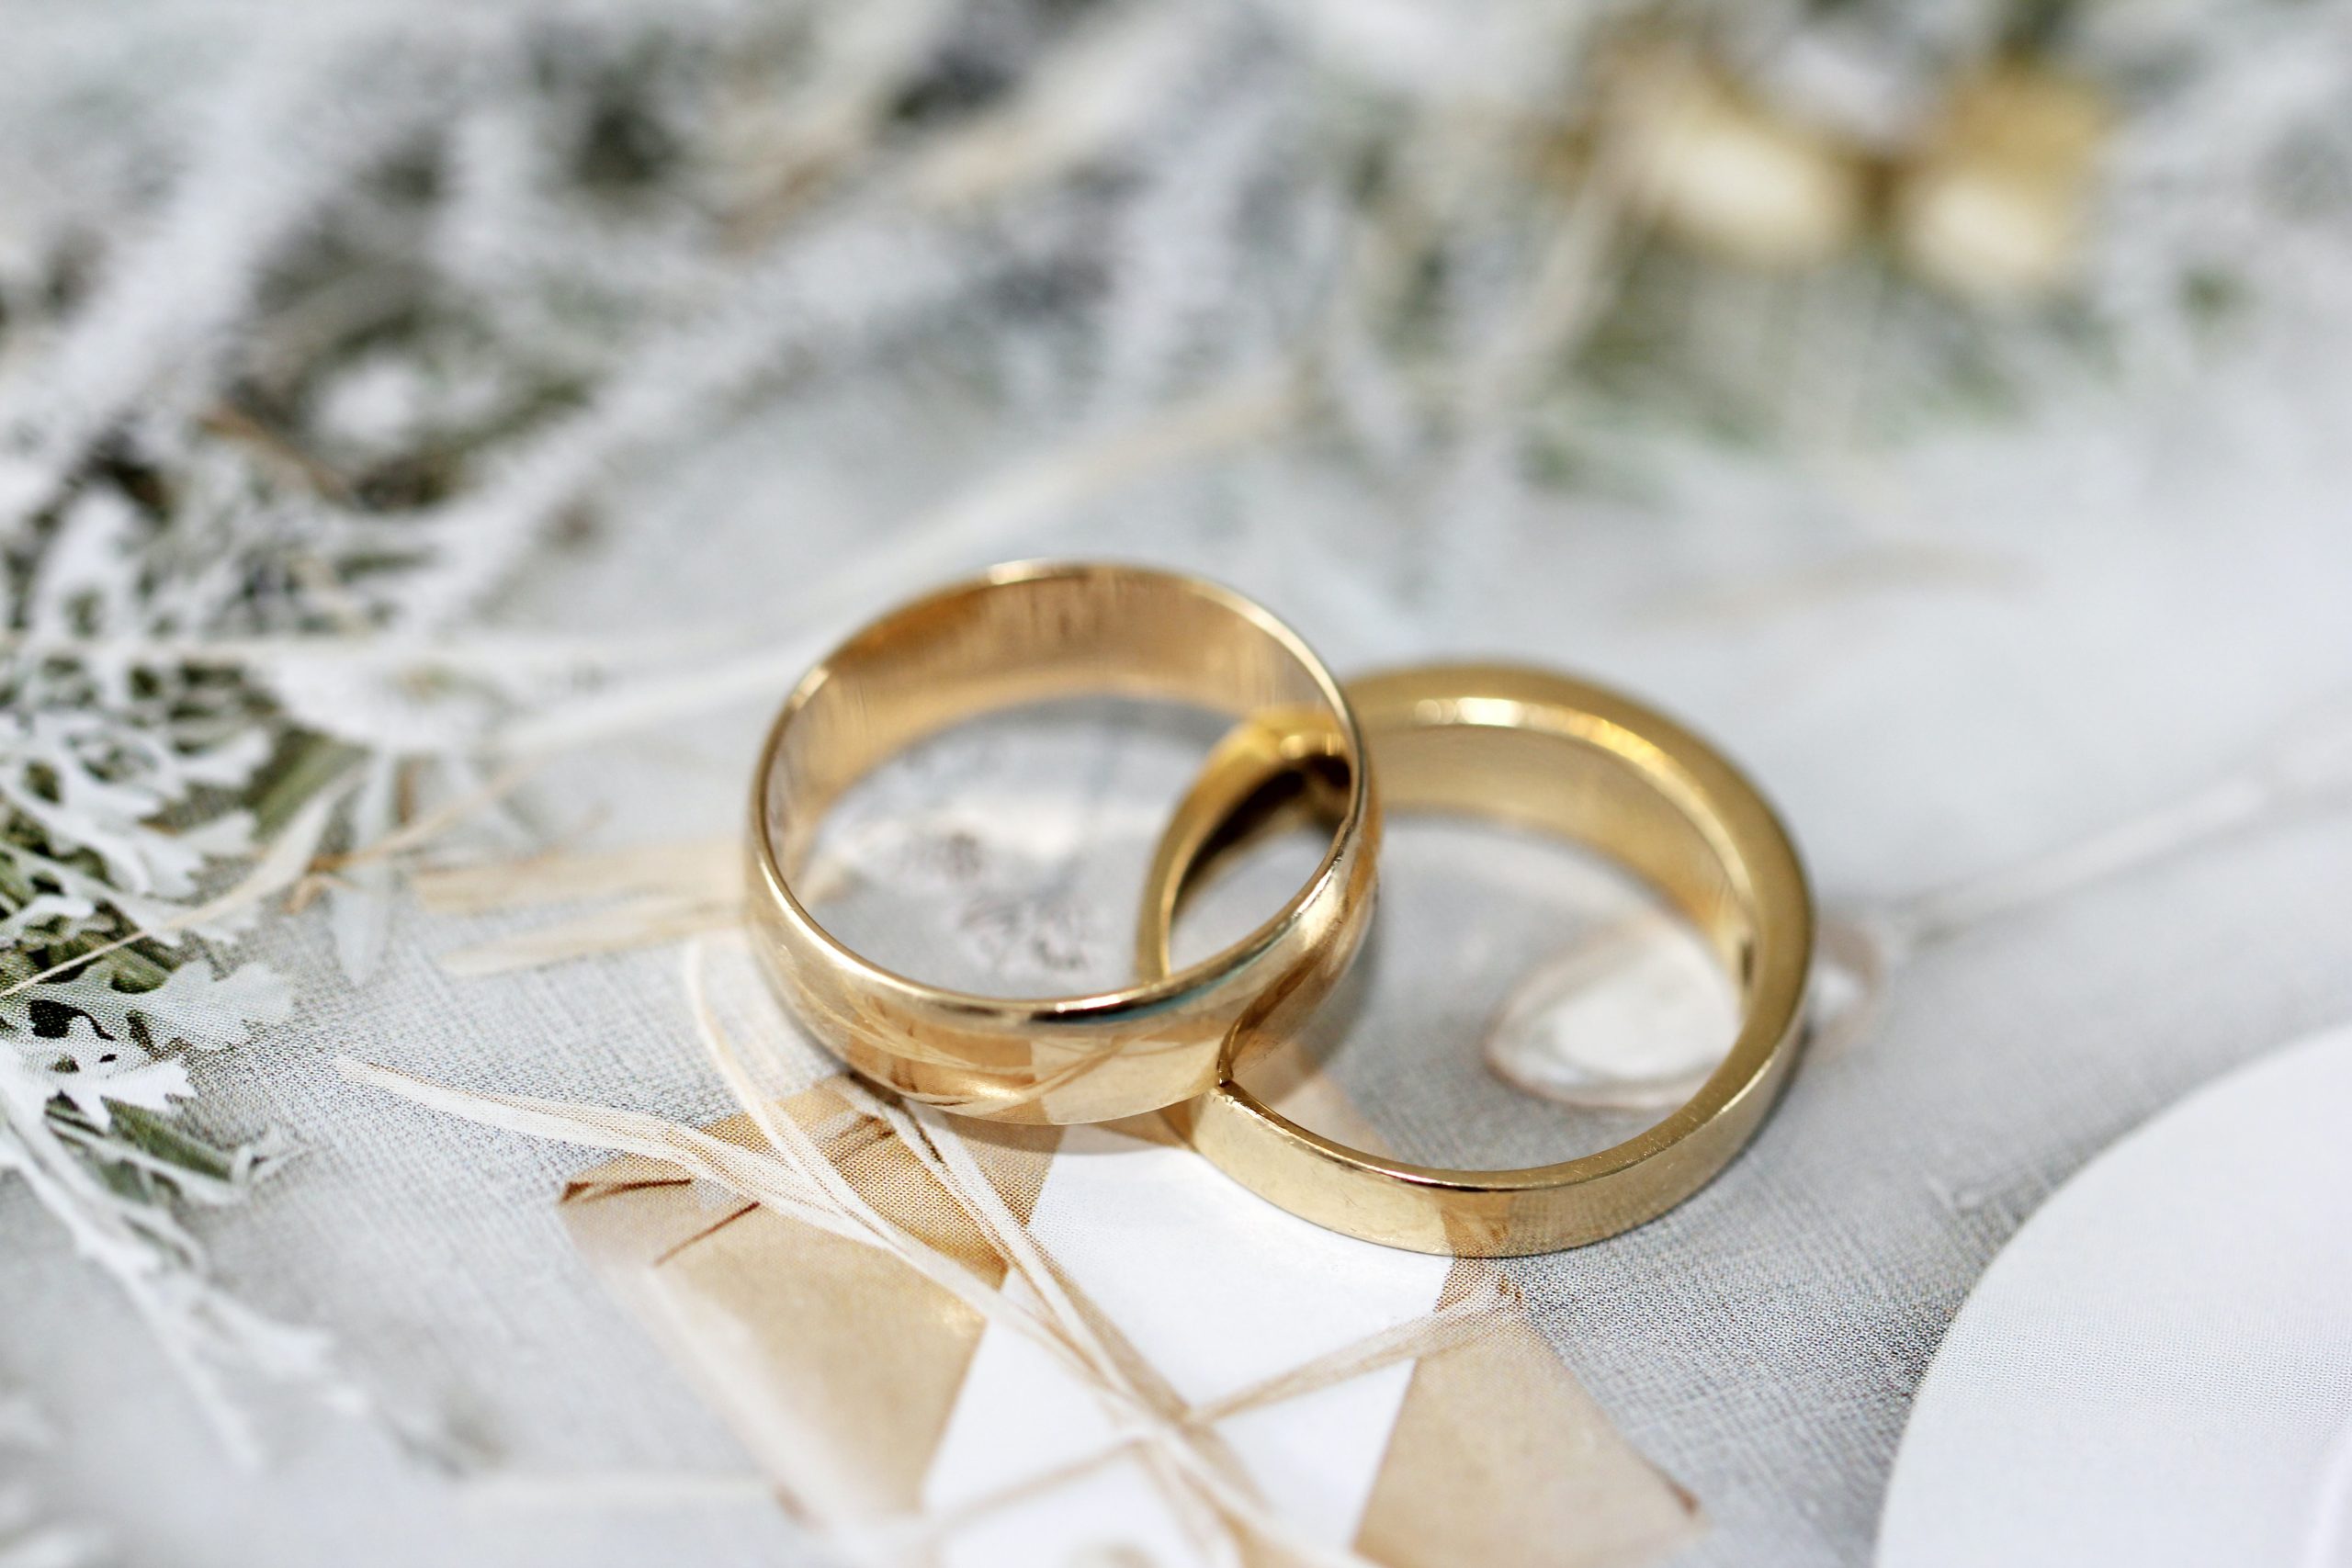 5 CONSEILS D’UNE WEDDING PLANNER PASSÉE PAR LA MAISON BLANCHE